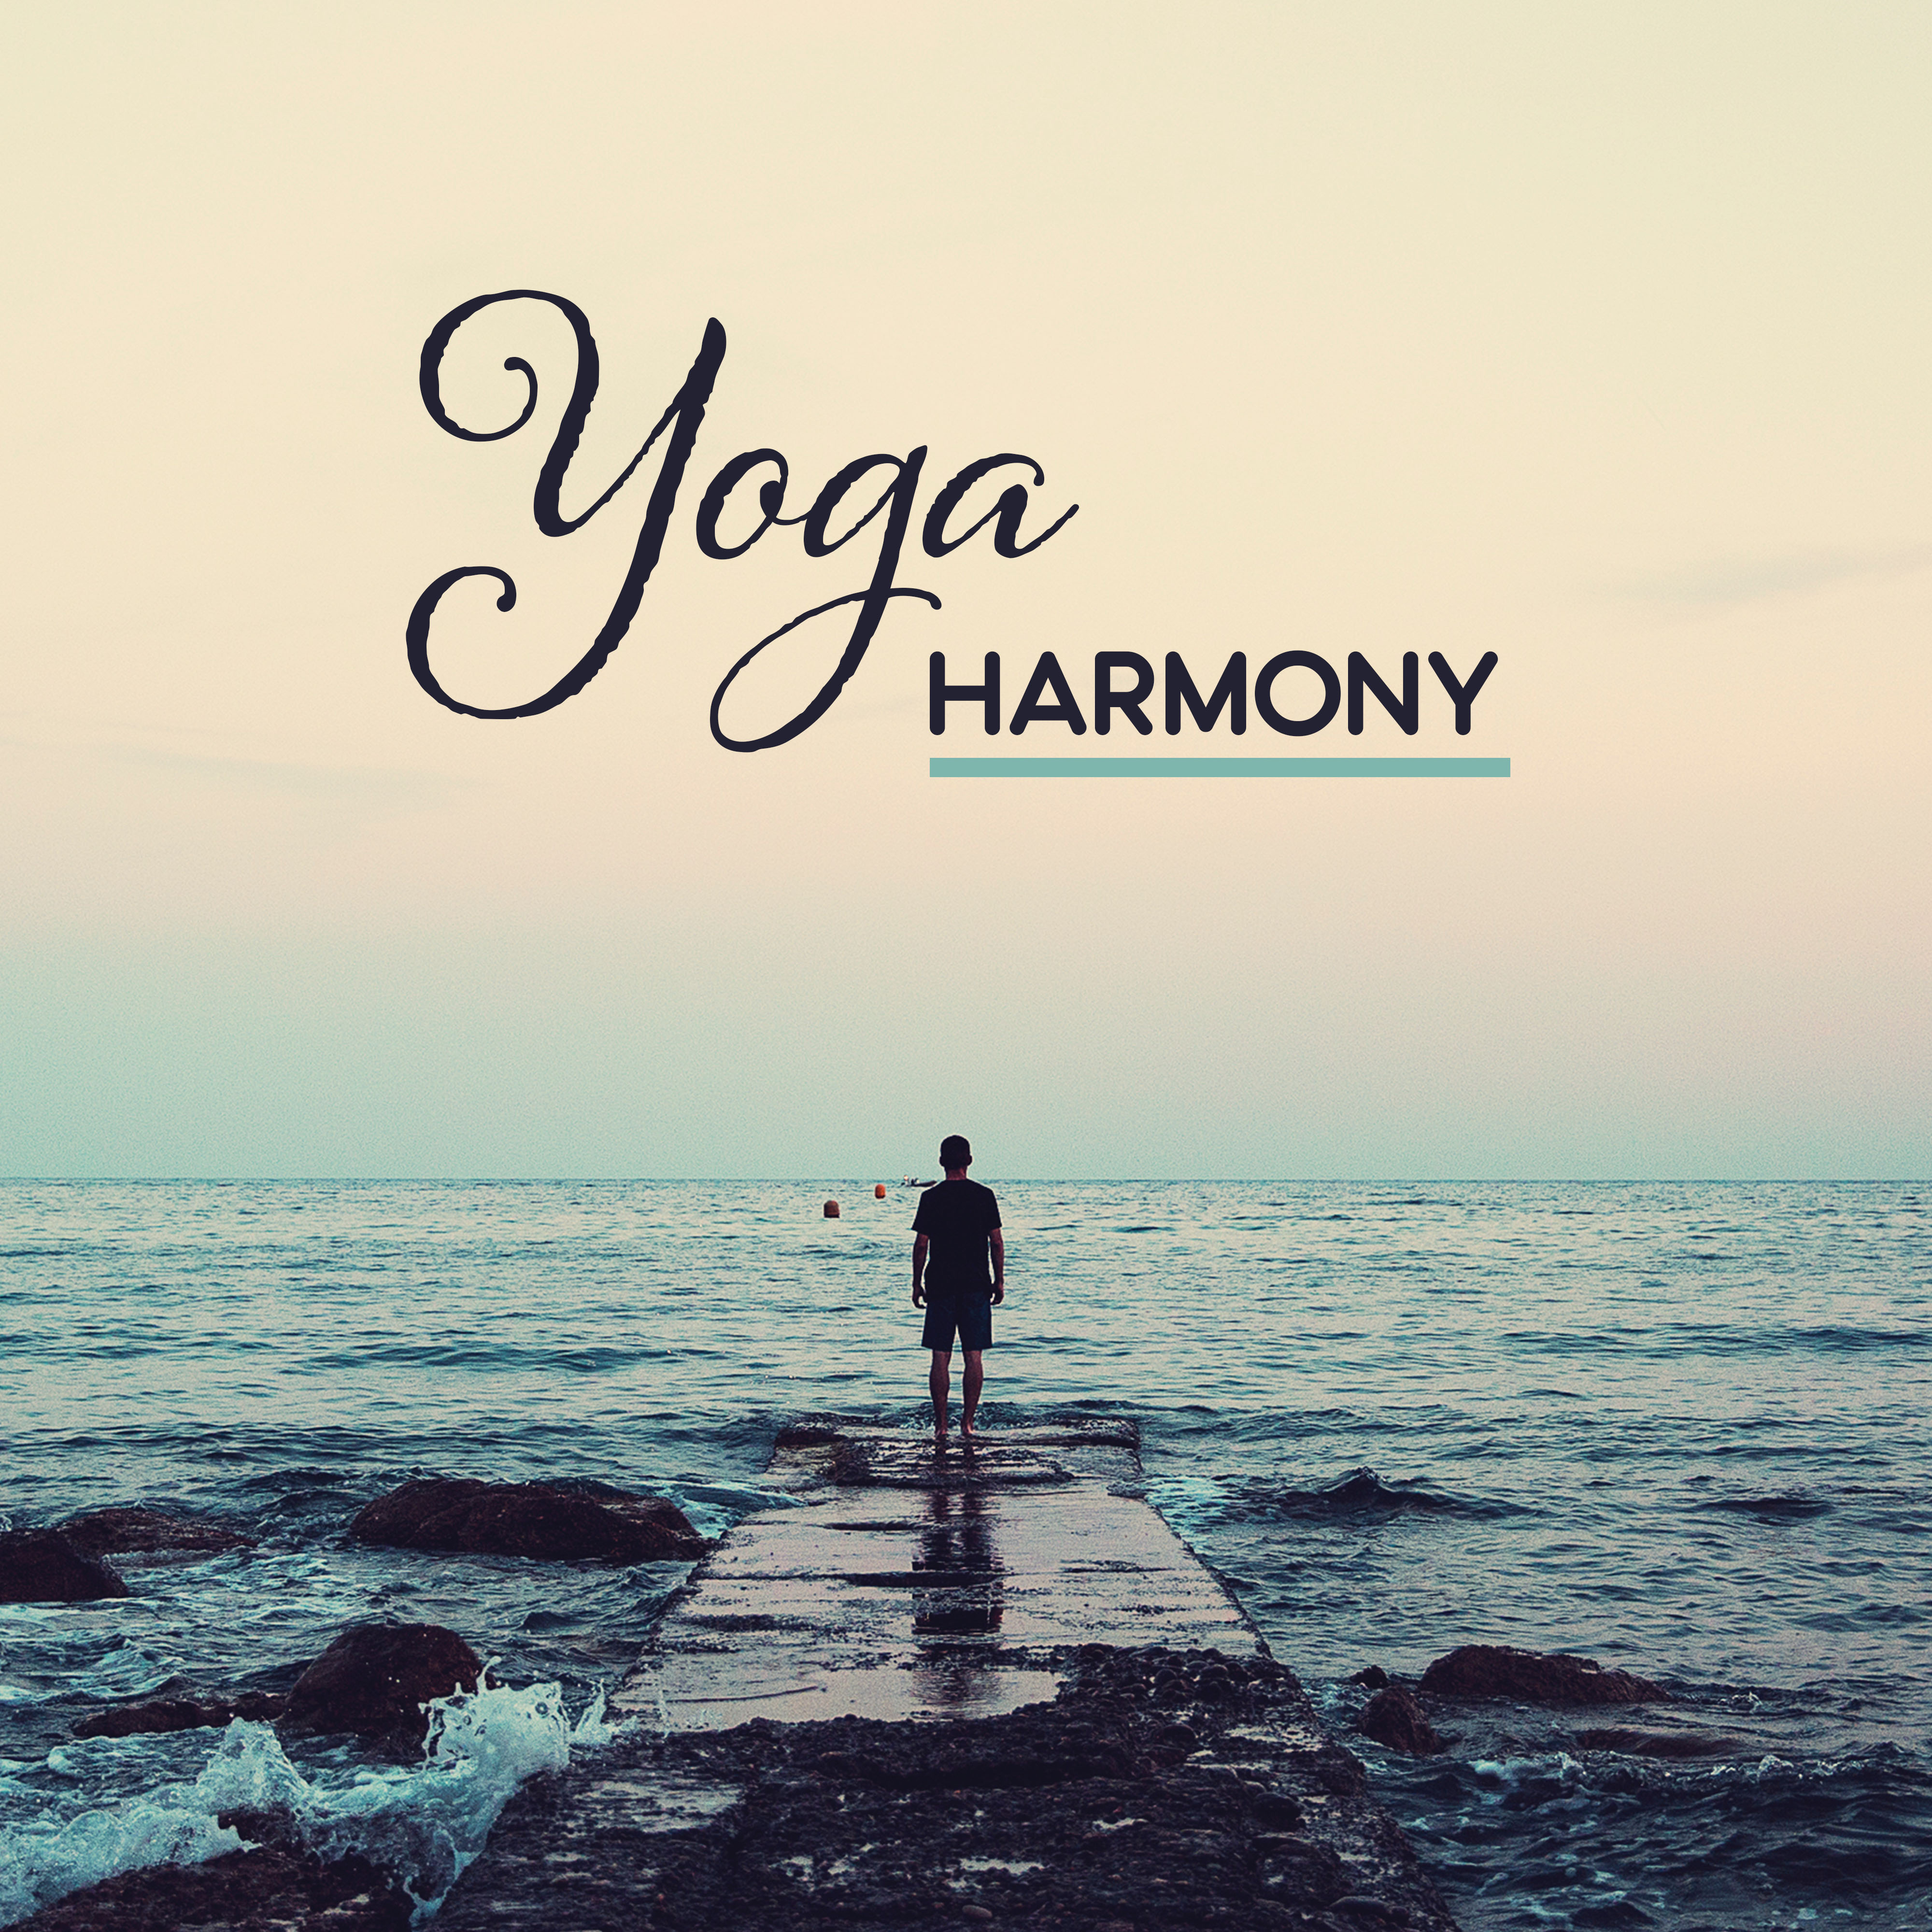 Yoga Harmony  New Age 2017 for Yoga, Meditation, Pilates, Mantra, Mindfulness, Relaxation